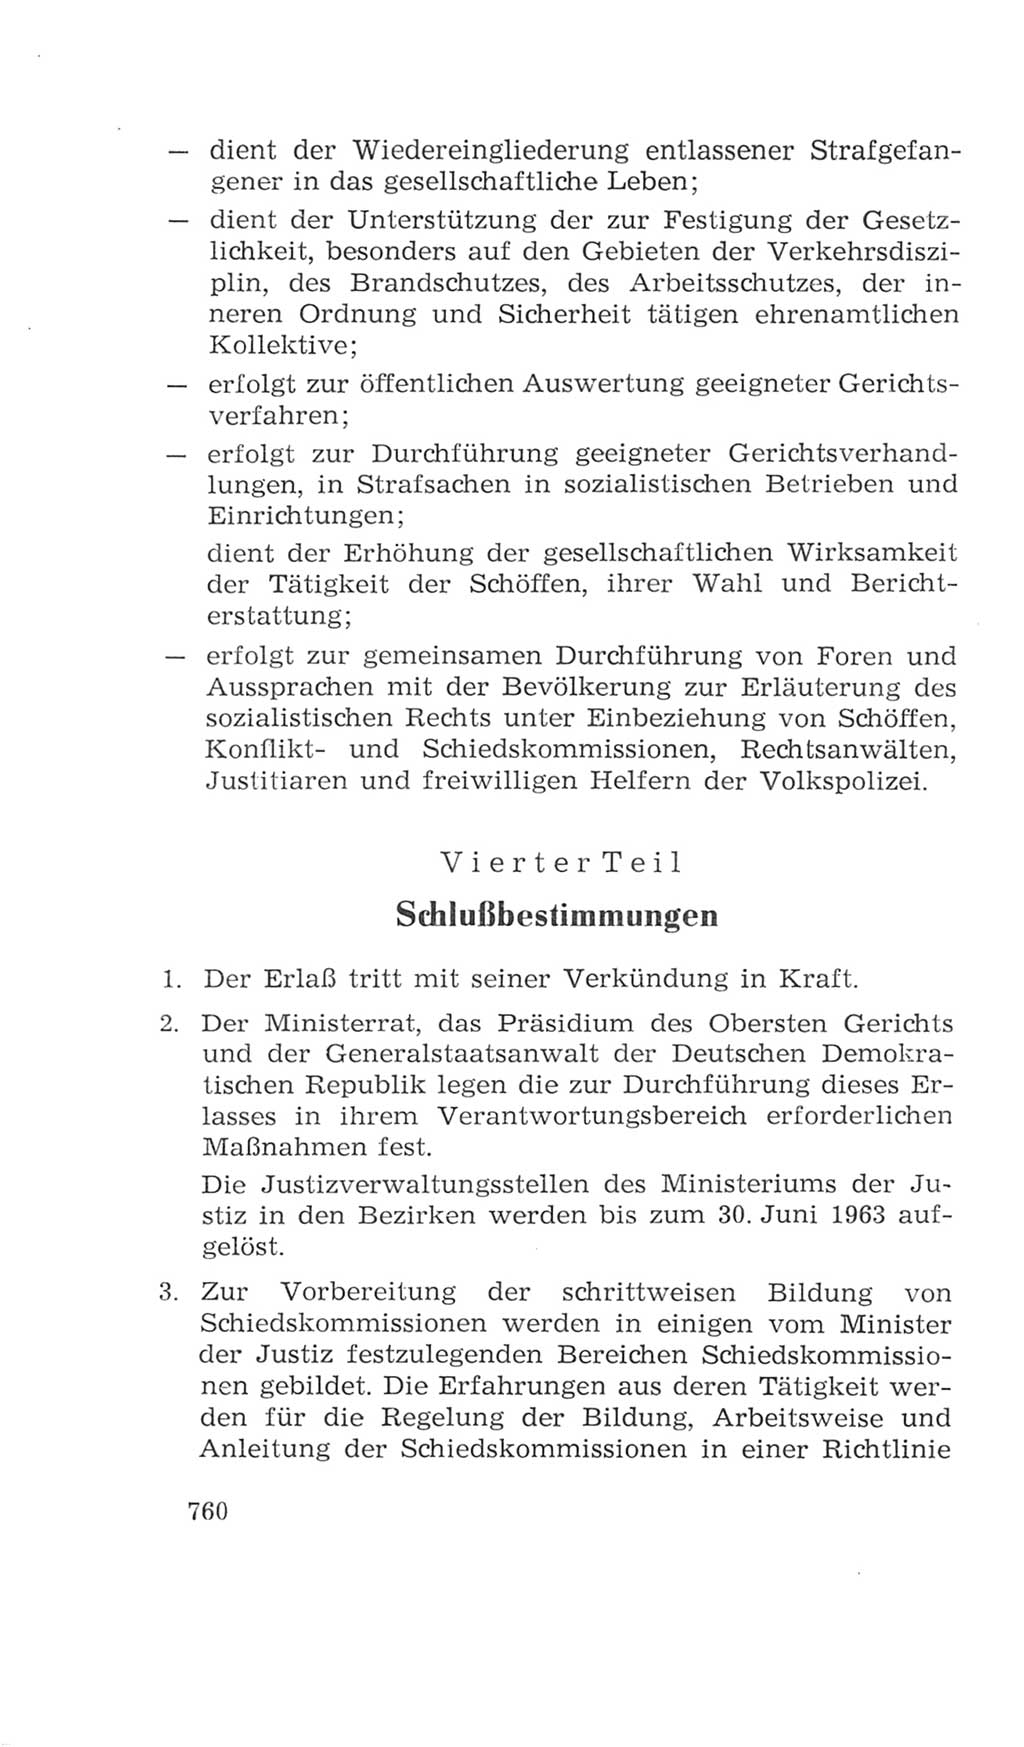 Volkskammer (VK) der Deutschen Demokratischen Republik (DDR), 4. Wahlperiode 1963-1967, Seite 760 (VK. DDR 4. WP. 1963-1967, S. 760)